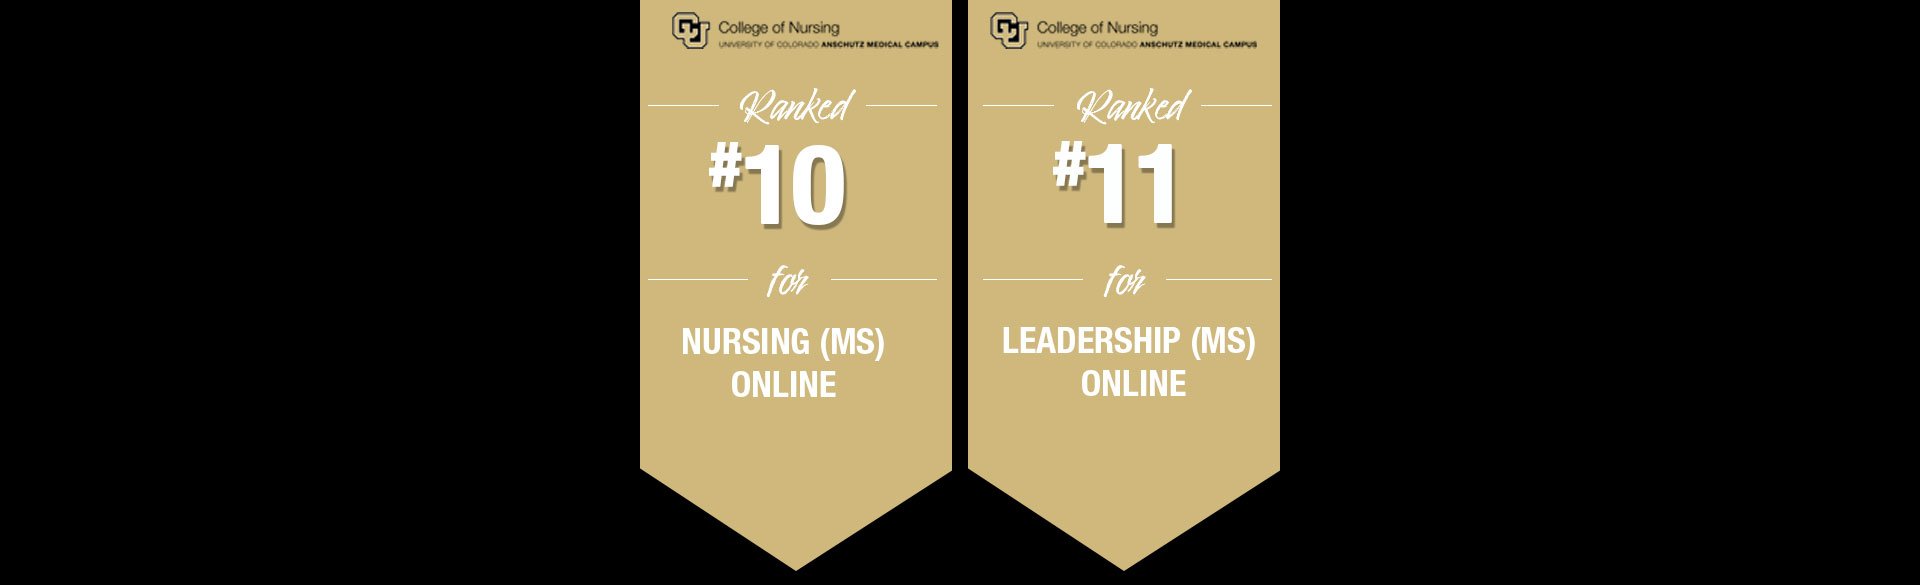 CU College of Nursing - rankings by U.S. News Report